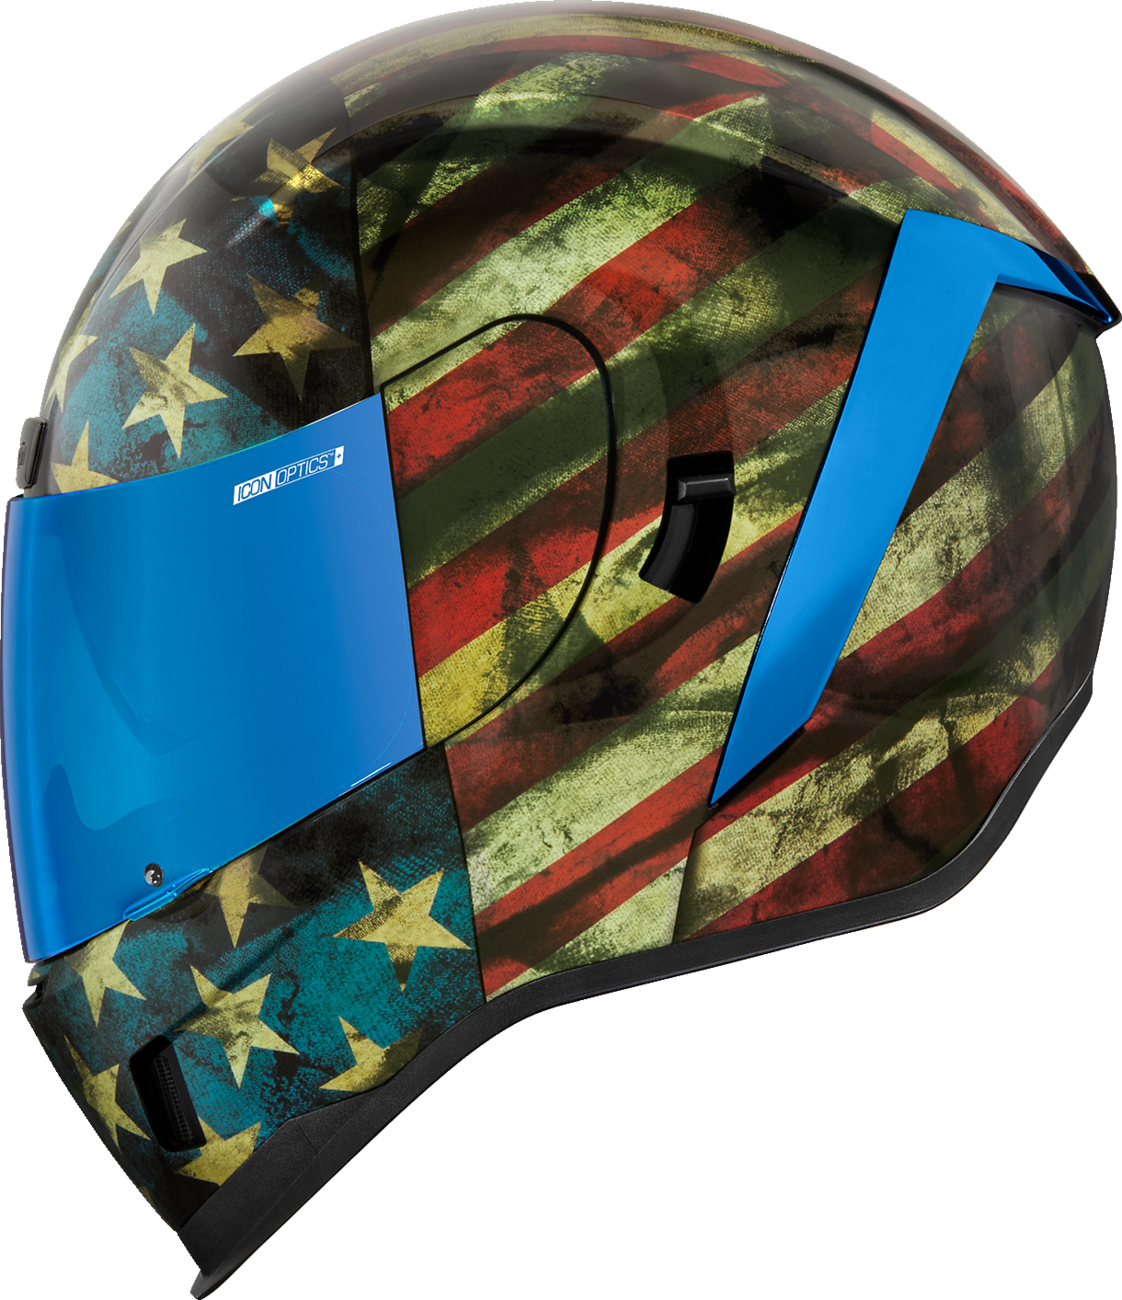 ICON Airform™ Helmet - Old Glory - Medium 0101-14784